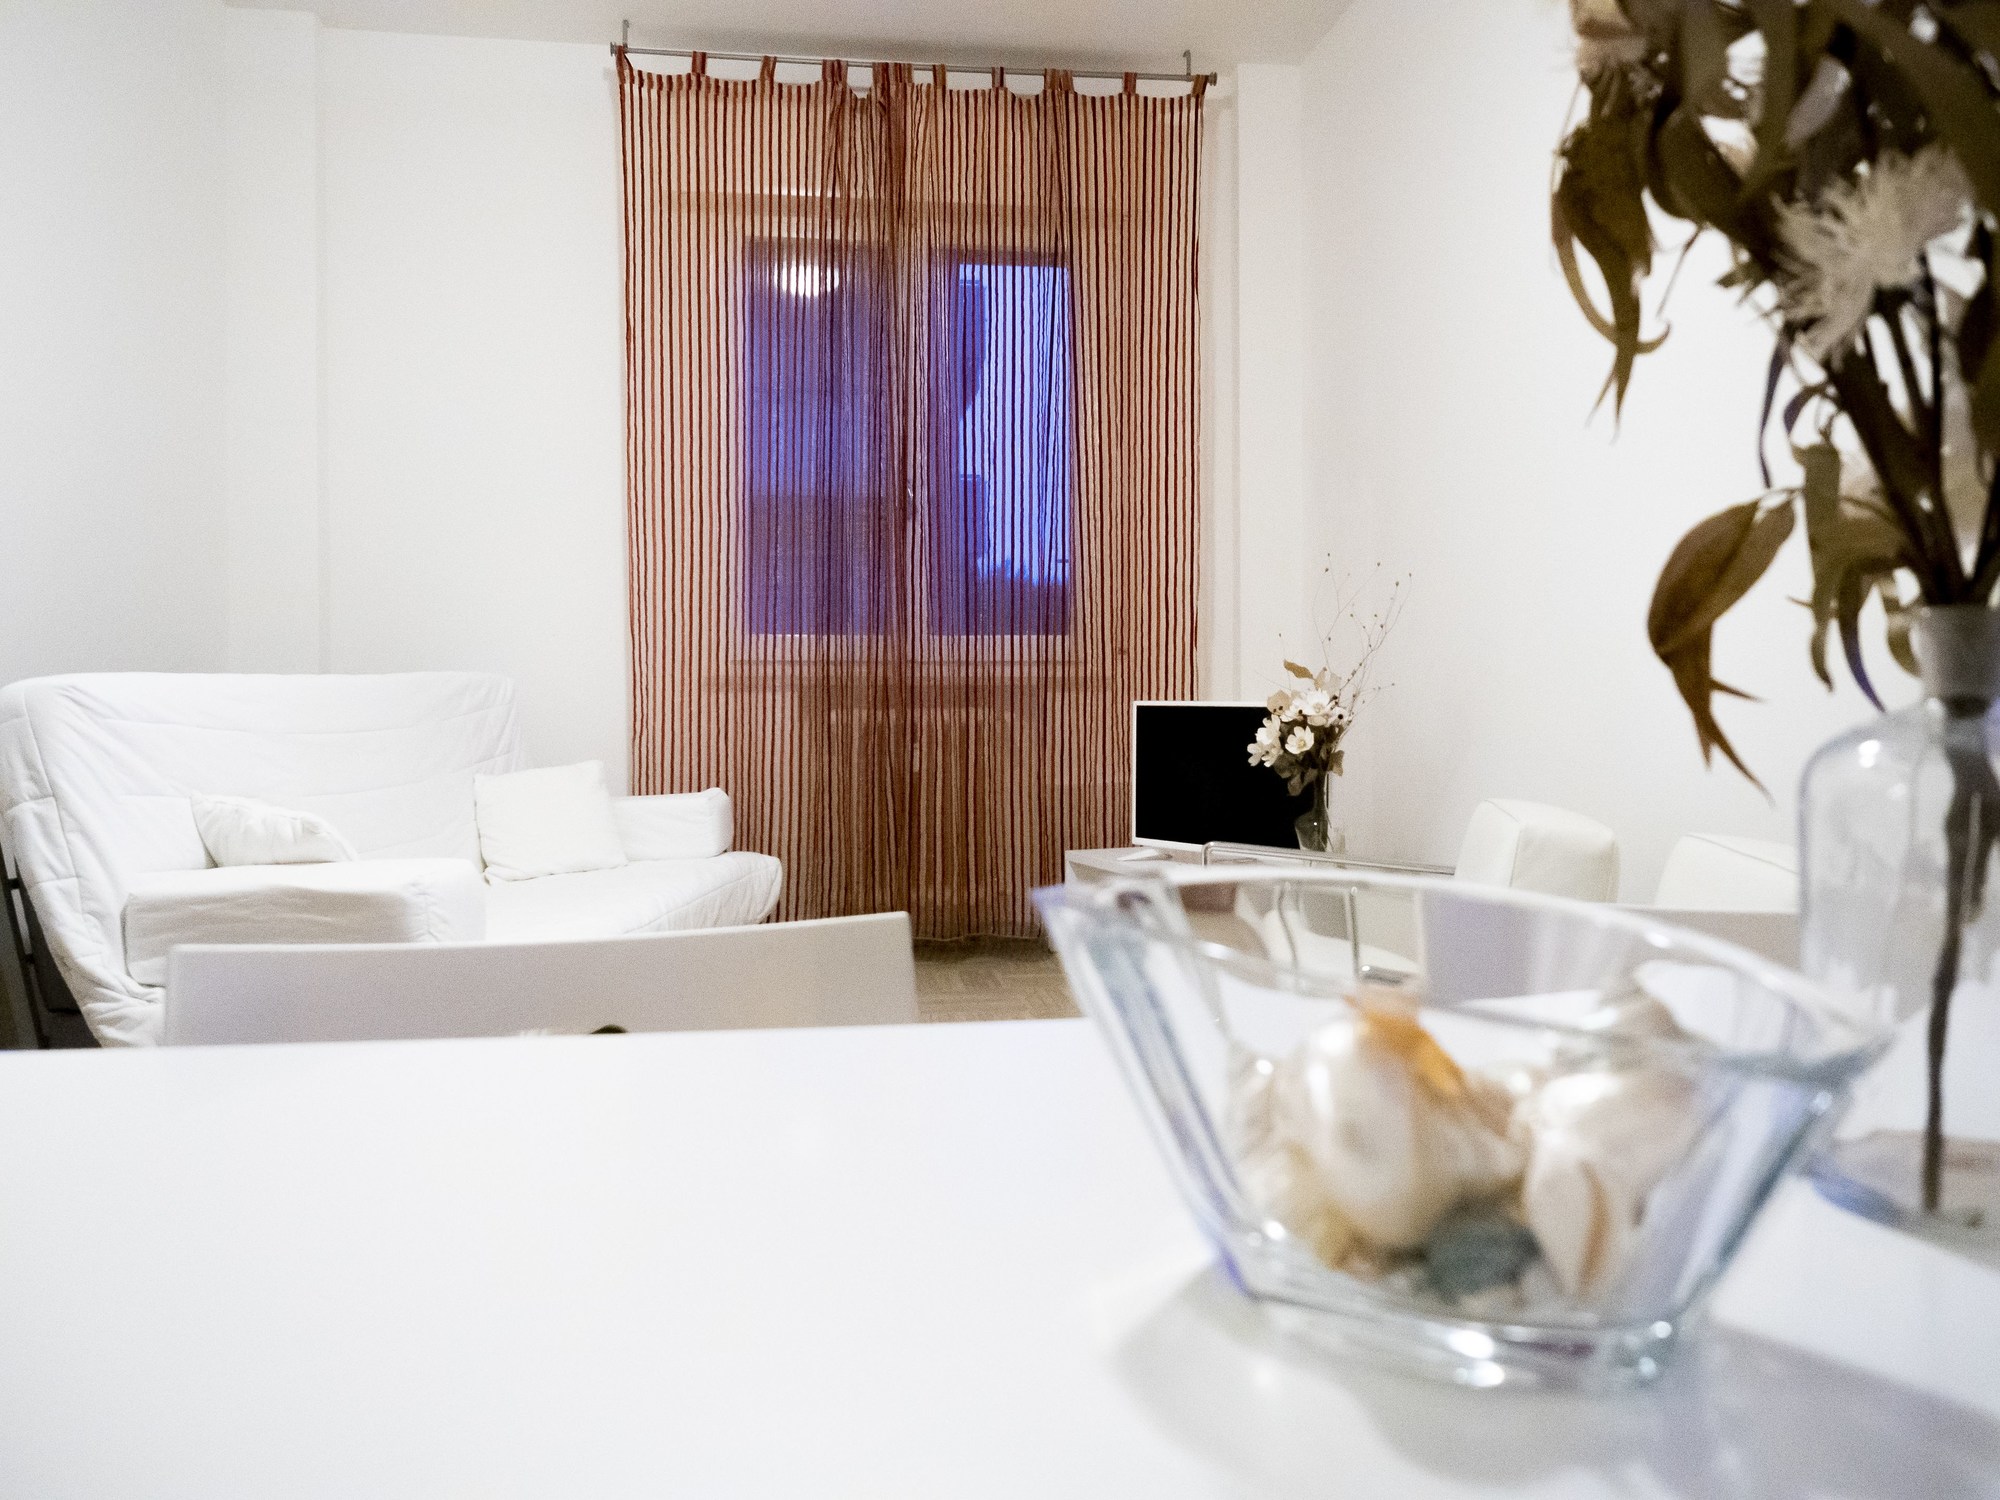 Cappellini-Rimini Updated 2022 Room Price-Reviews & Deals | Trip.com